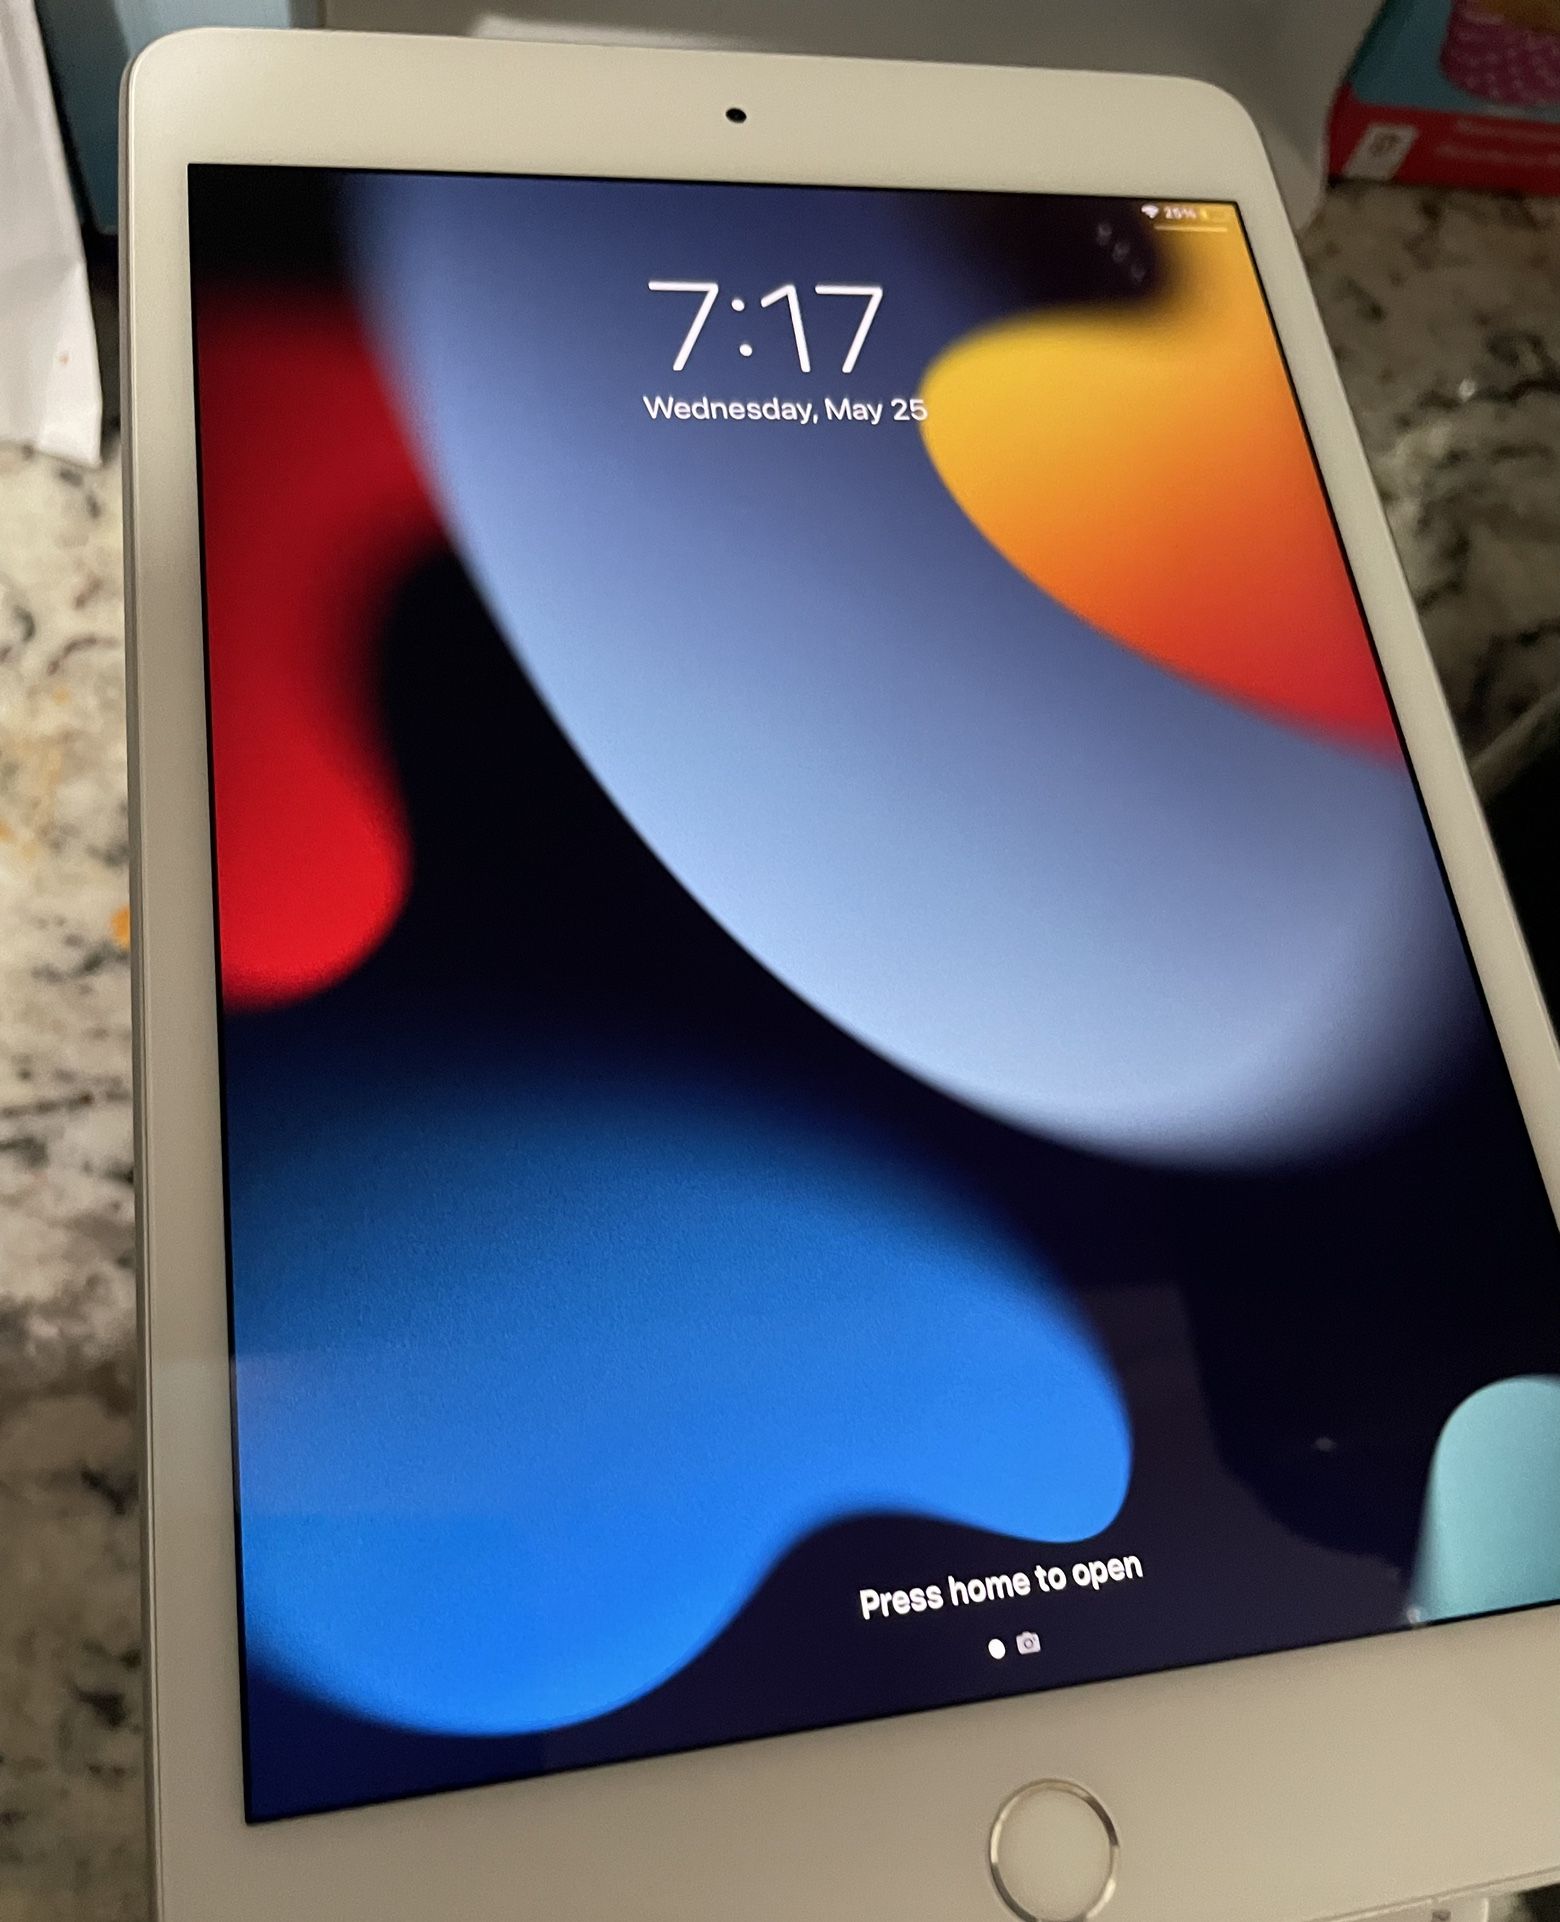 Silver Apple iPad Mini 5 2019 64GB Wi-Fi With Cellular Data 